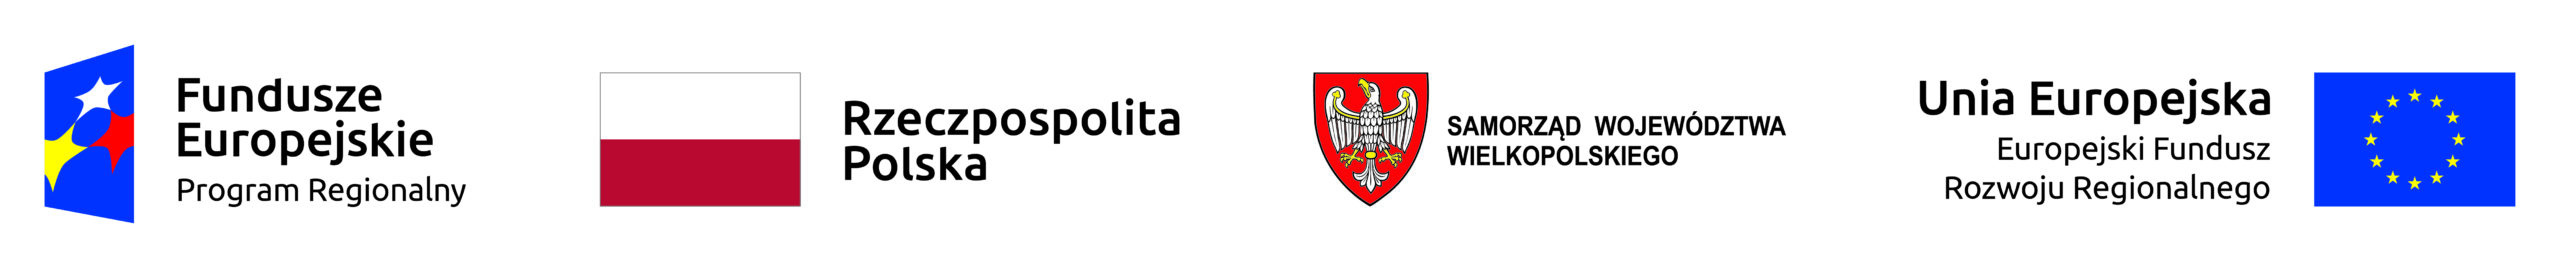 zestaw logotypów od lewej logotyp Fundusze Europejskie, flaga Rzeczpospolitej Polskiej, herb województwa wielkopolskiego przedstawiający orła białego na czerwonym tle i flaga unii europejskiej